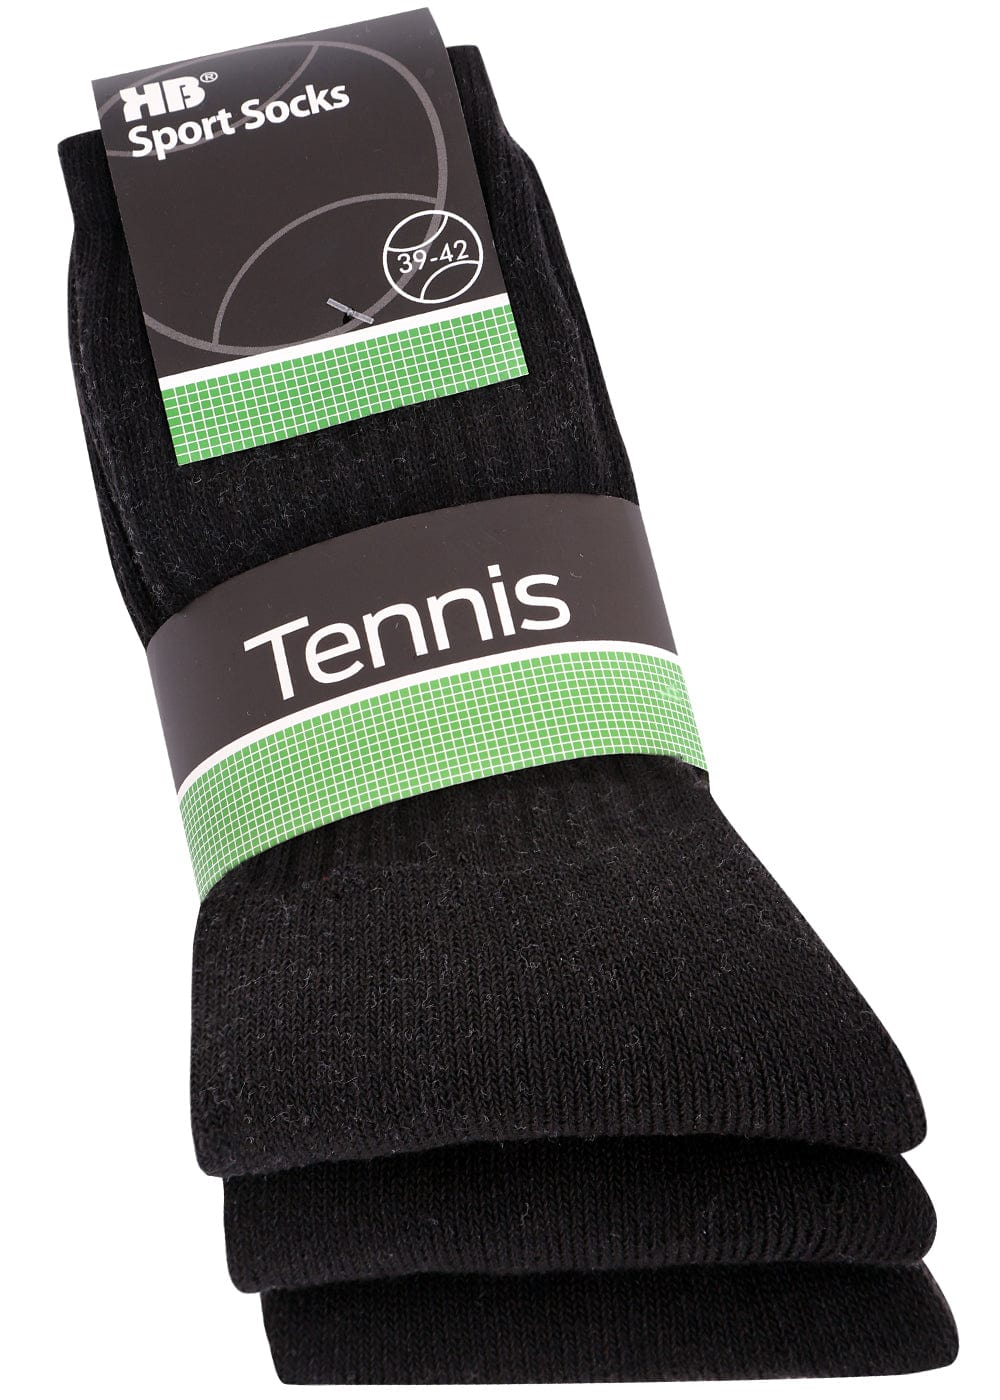 und KB für Sportsocken Tennissocken 6 Damen Paar – schwarz - Socken Herren